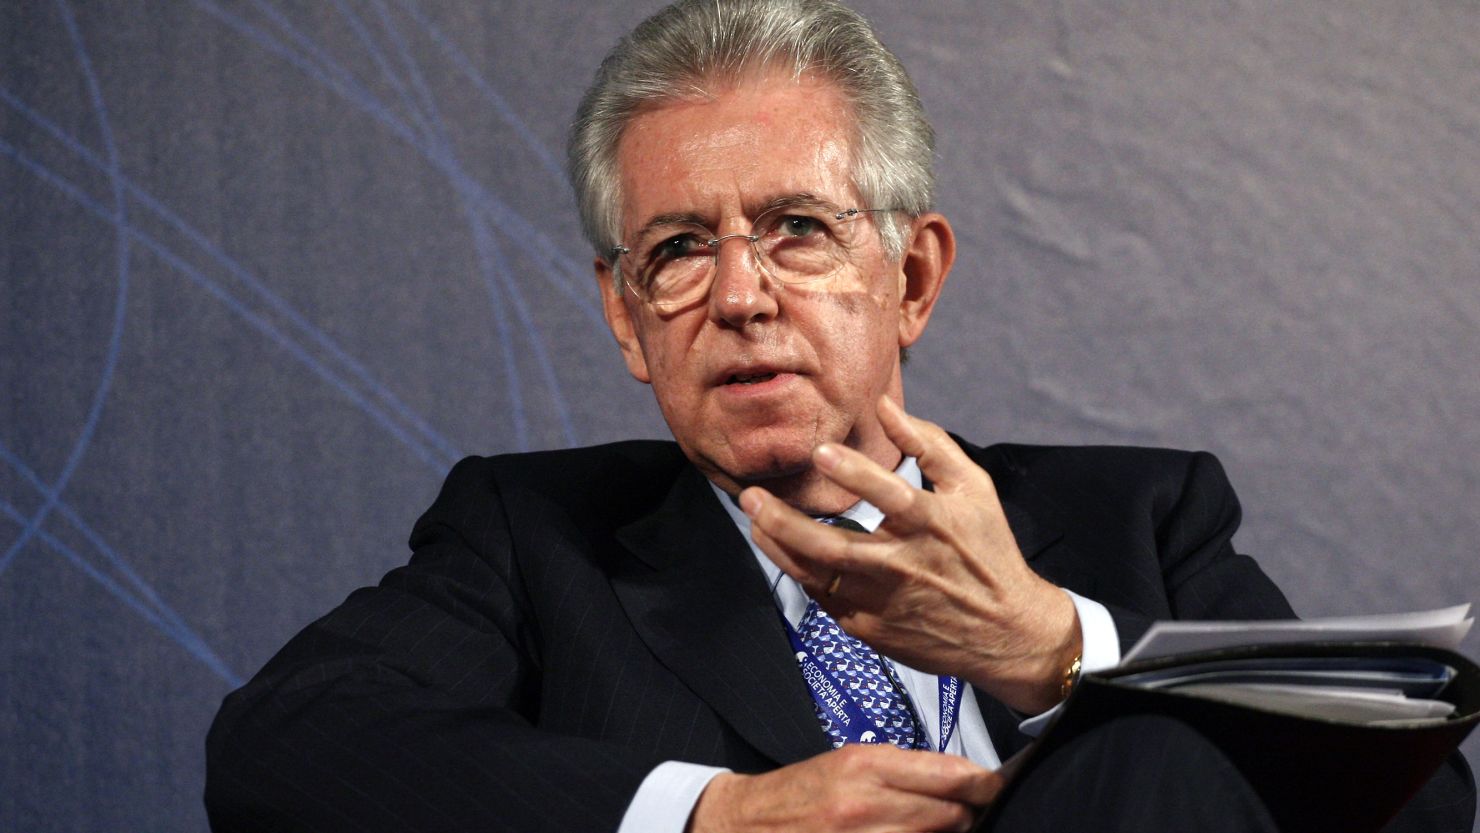 Mario Monti has been nominated as a successor to Italian Prime Minister Silvio Berlusconi.